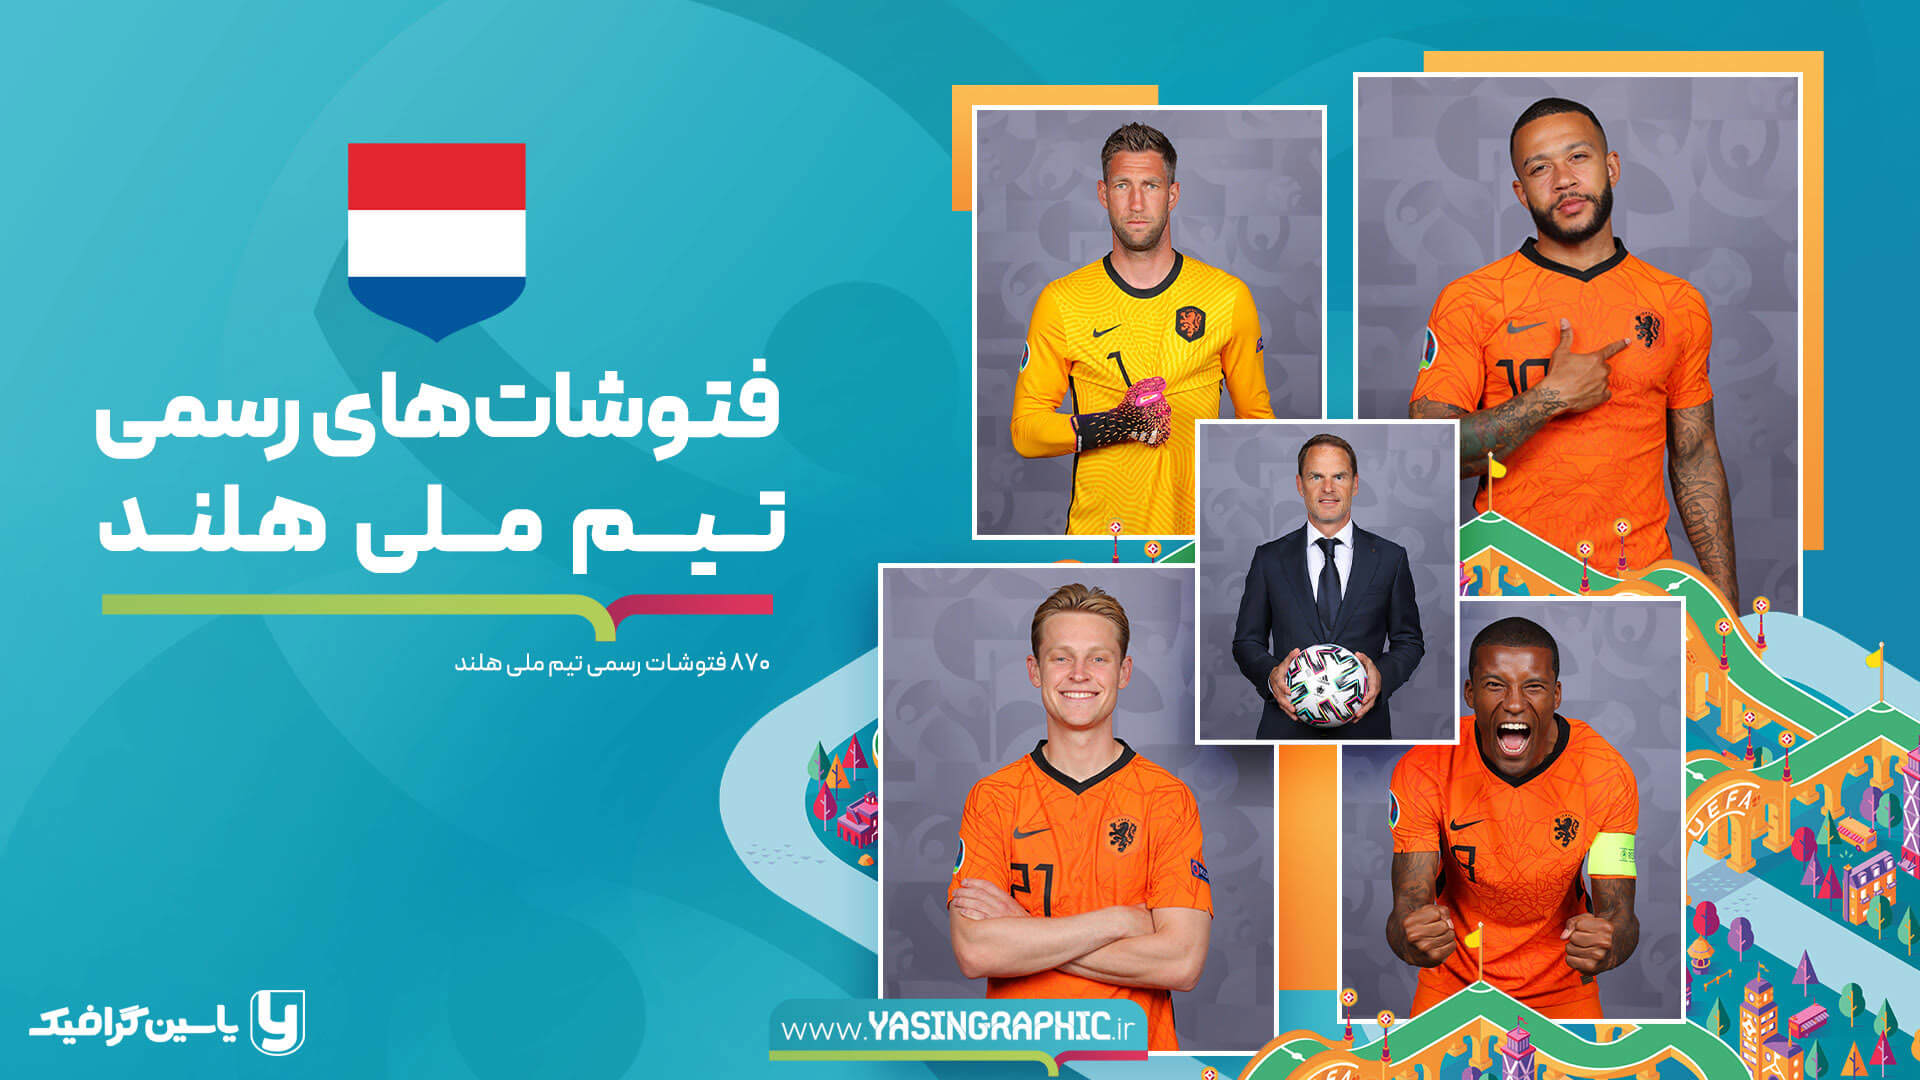 فتوشات های تیم ملی هلند - یورو 2020